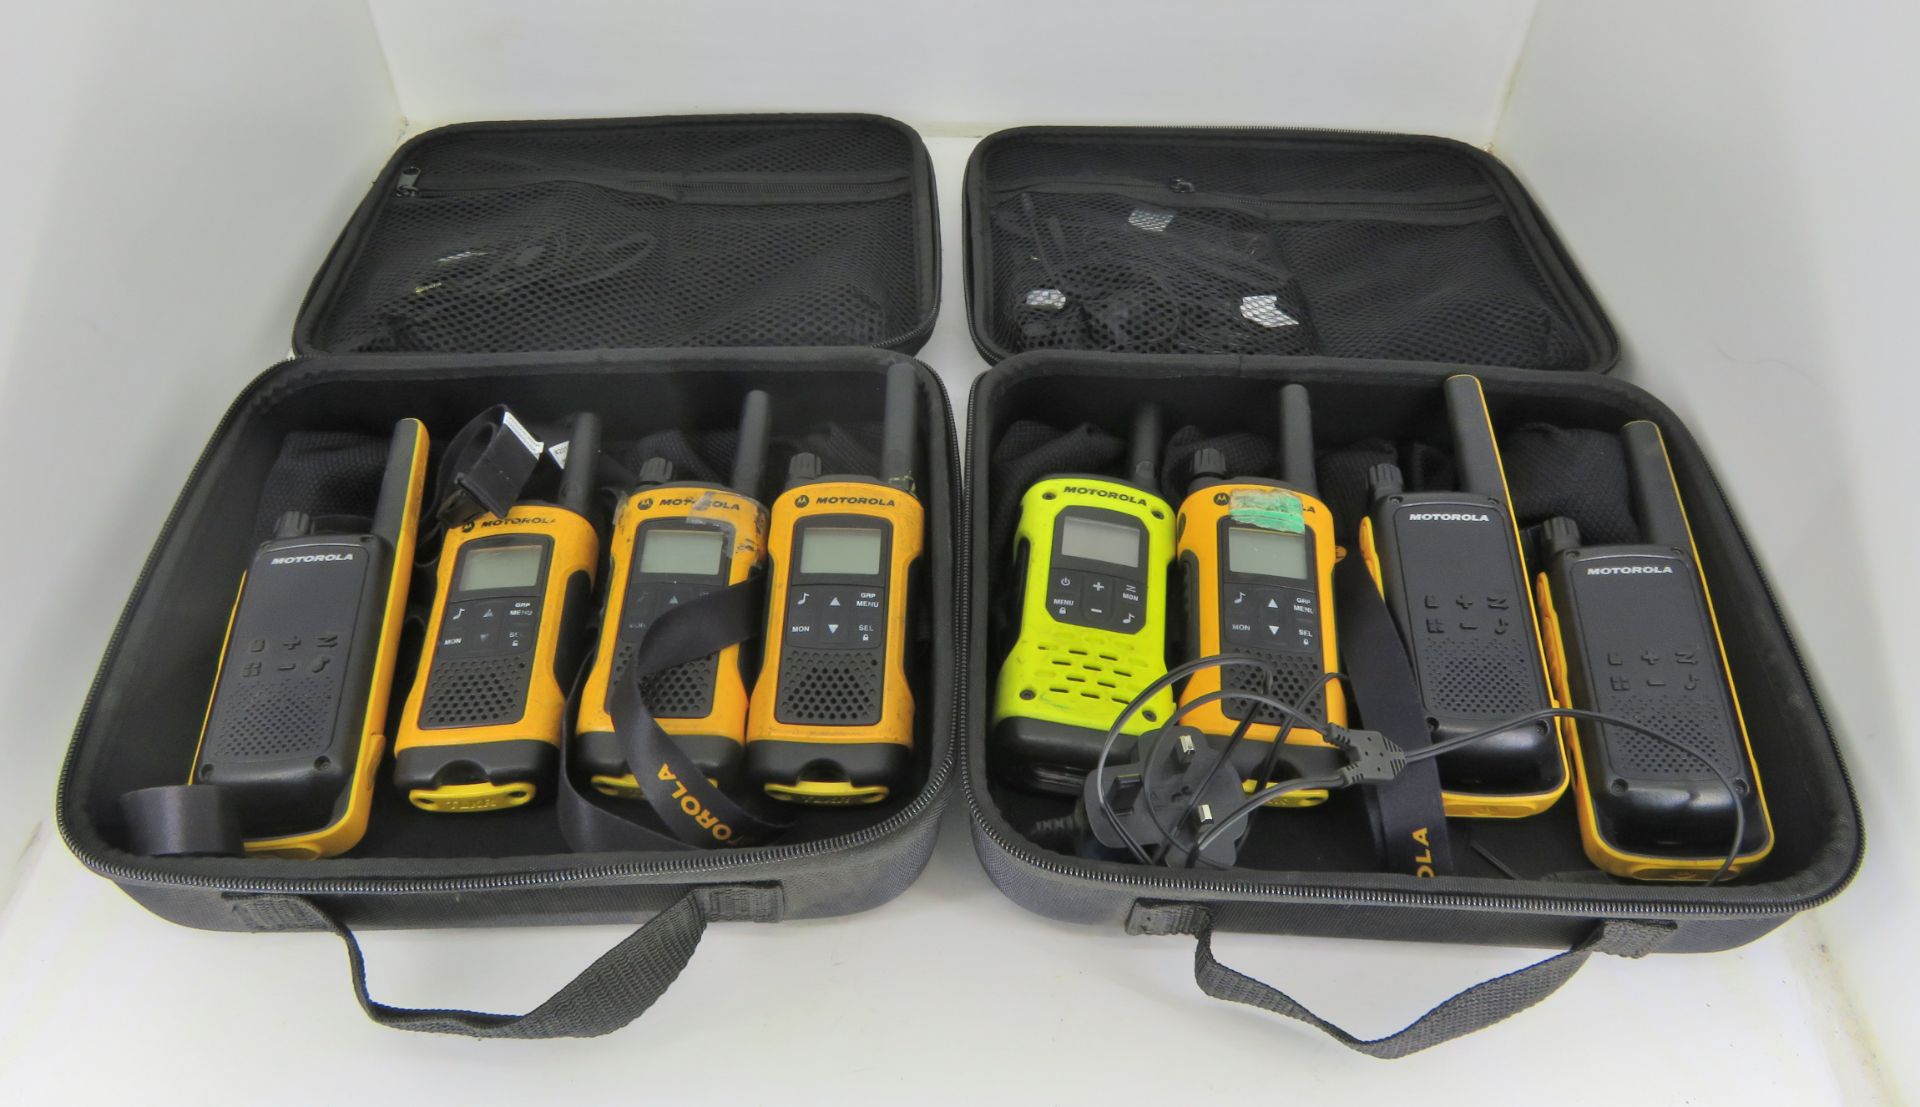 Motorola walkie talkies in case - AS SPARES OR REPAIRS